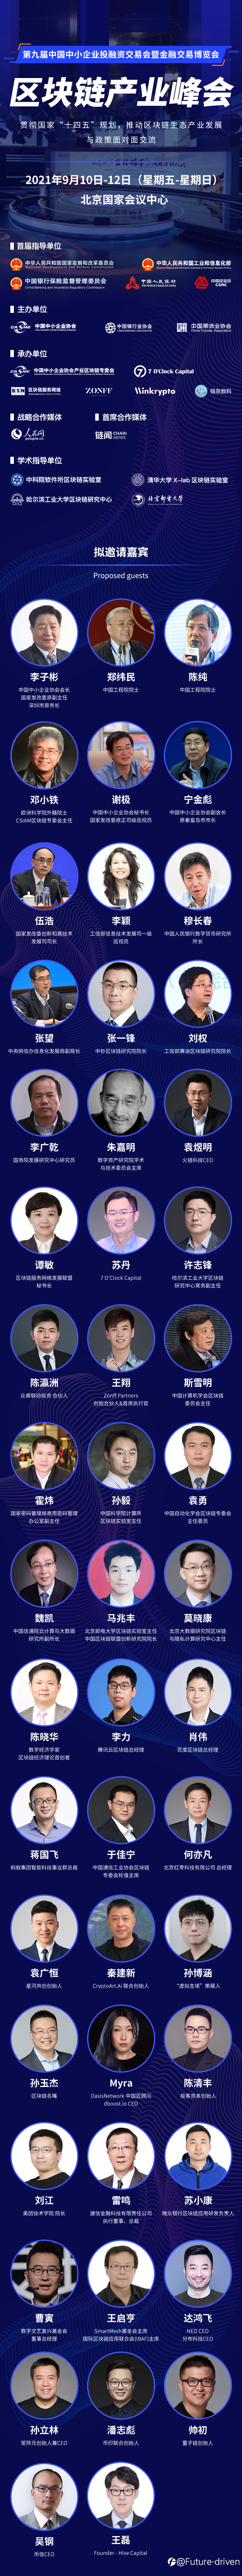 2021中国区块链产业峰会——Oasis Network中国区顾问Myra Wang将出席会议